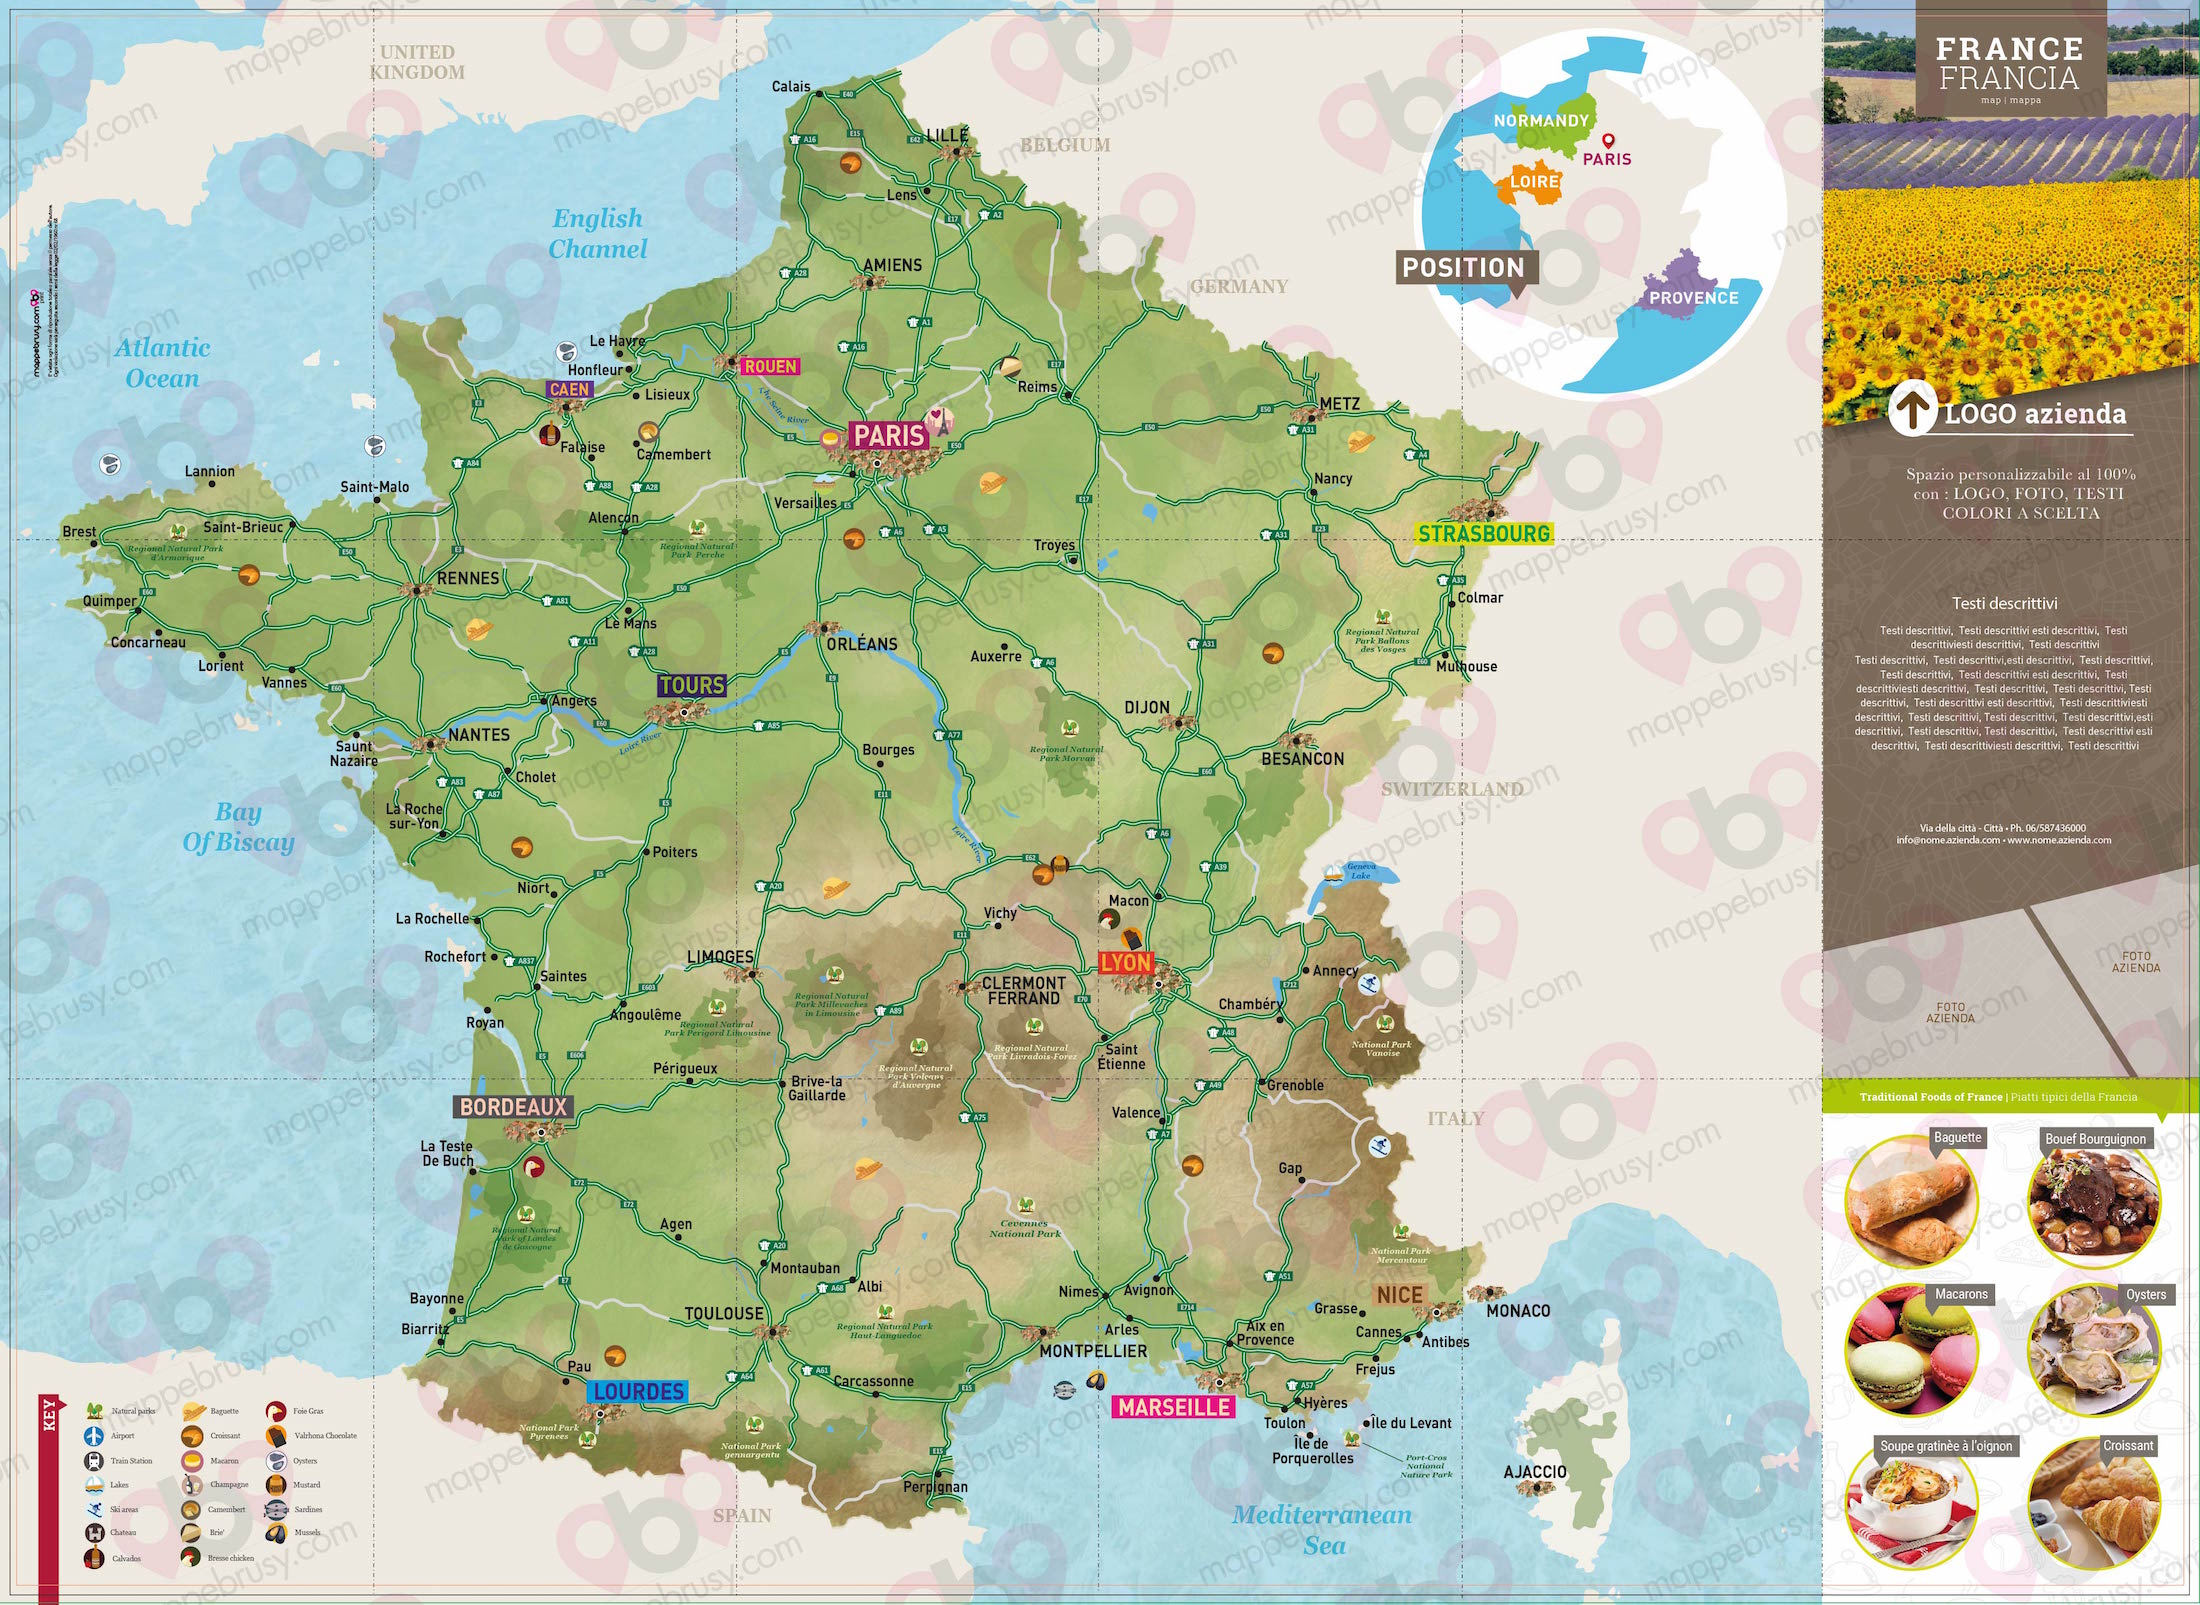 Mappa di Francia - Francia city map - mappa Francia - mappa personalizzata di Francia - mappa tursitica di Francia